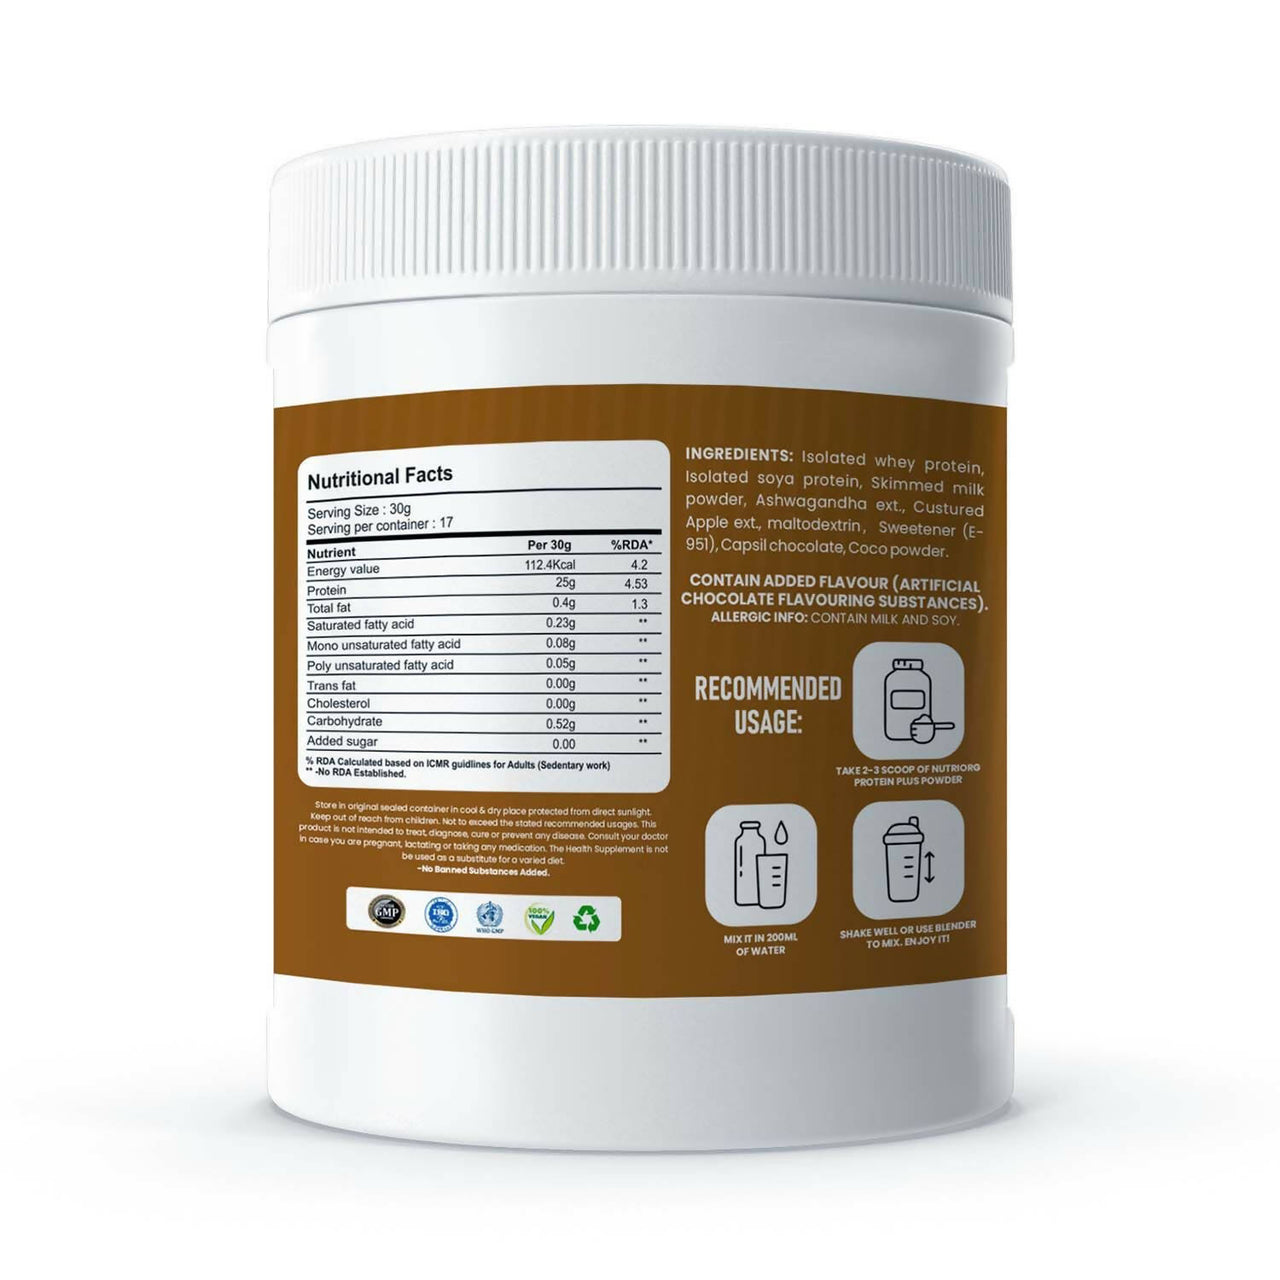 Nutriorg Protein Plus Chocolate Flavor Powder - Distacart